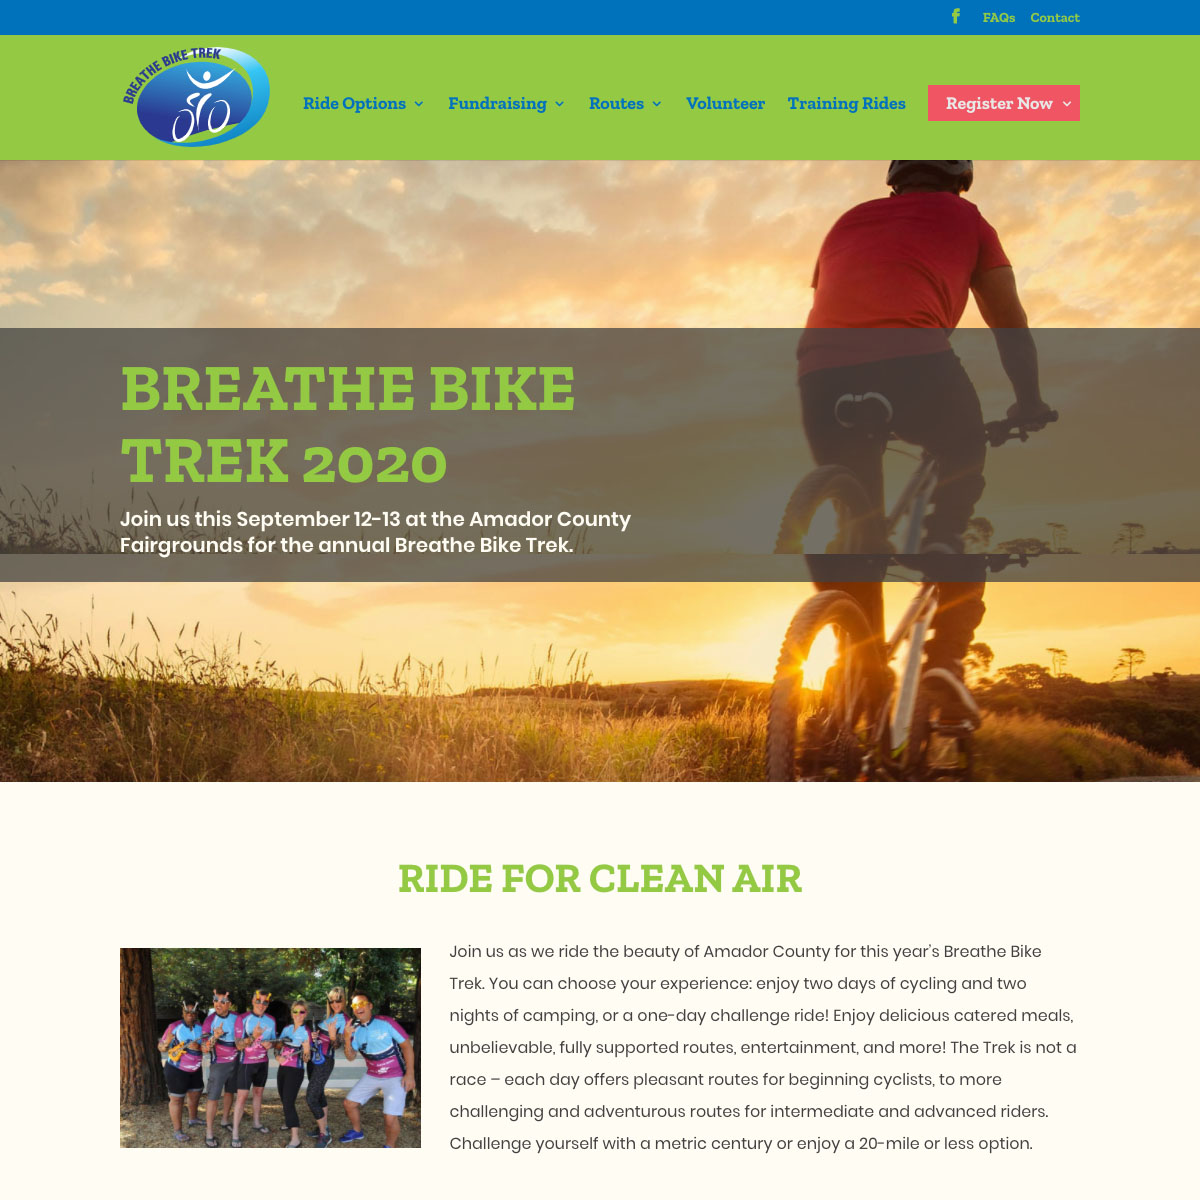 Web design for the Breathe Bike Trek